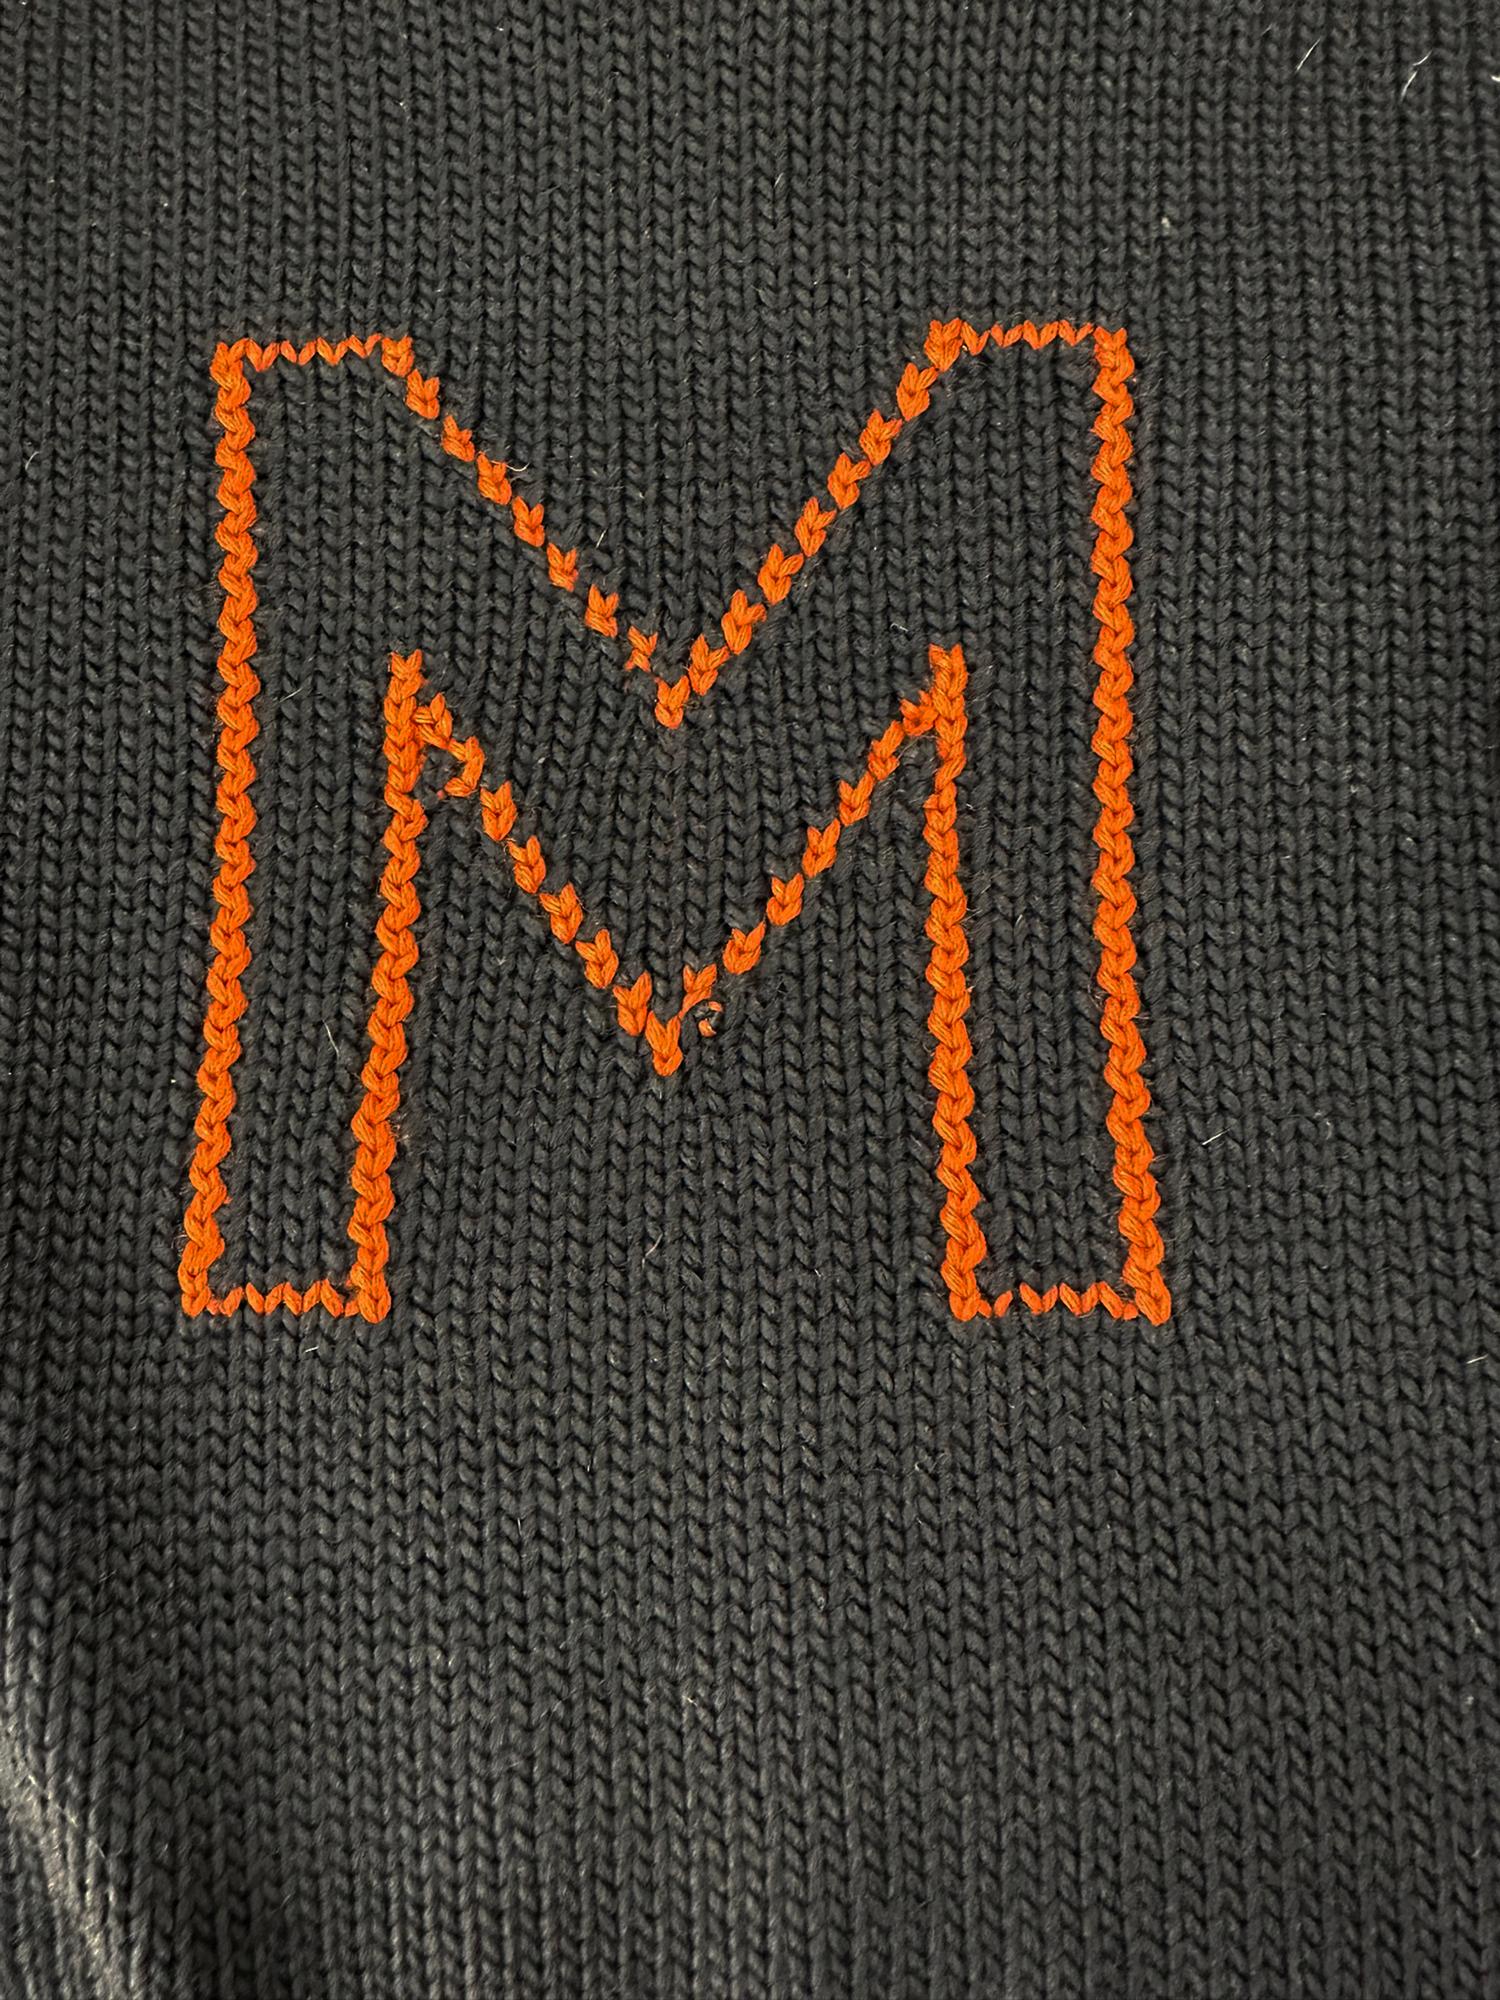 Milton Academy, Massachusetts, frühe 1900er Jahre, Universität  Schulpullover dunkelblau 100% Wolle mit orangefarbenem H auf der Vorderseite eingestrickt. Klassischer Pullover aus Wolle, Bootsausschnitt, lange Ärmel mit tief gerippten Bündchen, tief